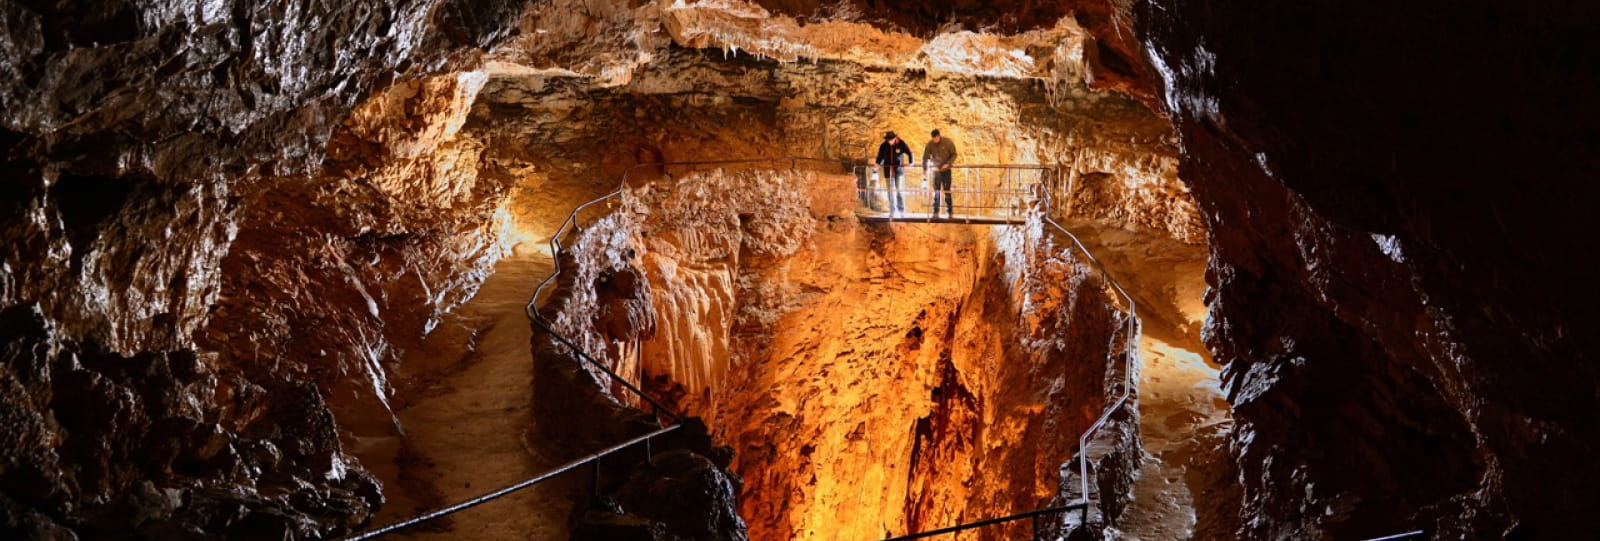 Site naturel de la Grotte de la Luire